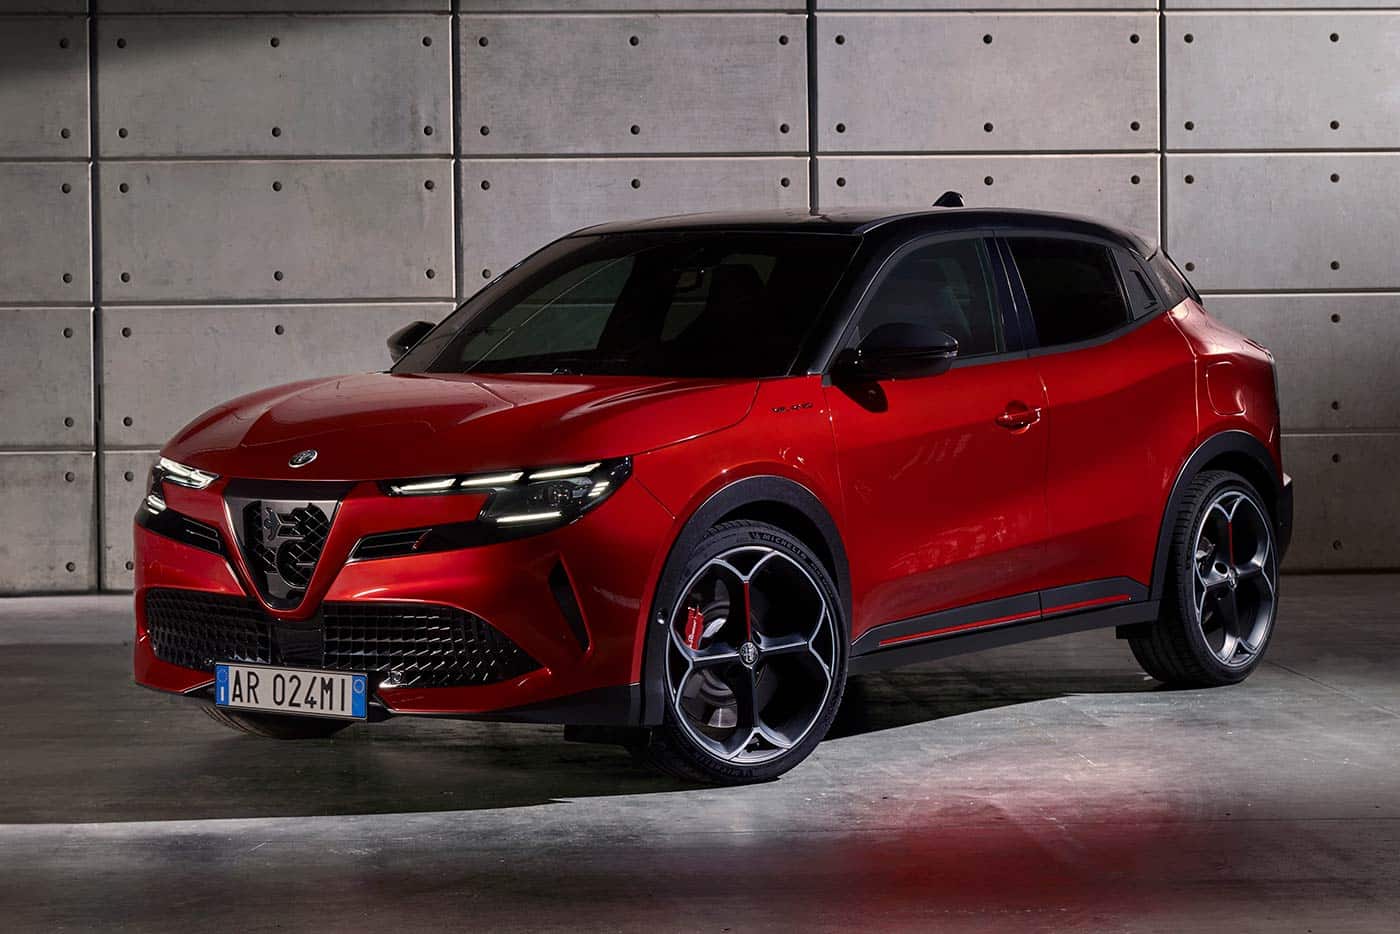 Πρεμιέρα για τη συναρπαστική νέα Alfa Romeo Milano